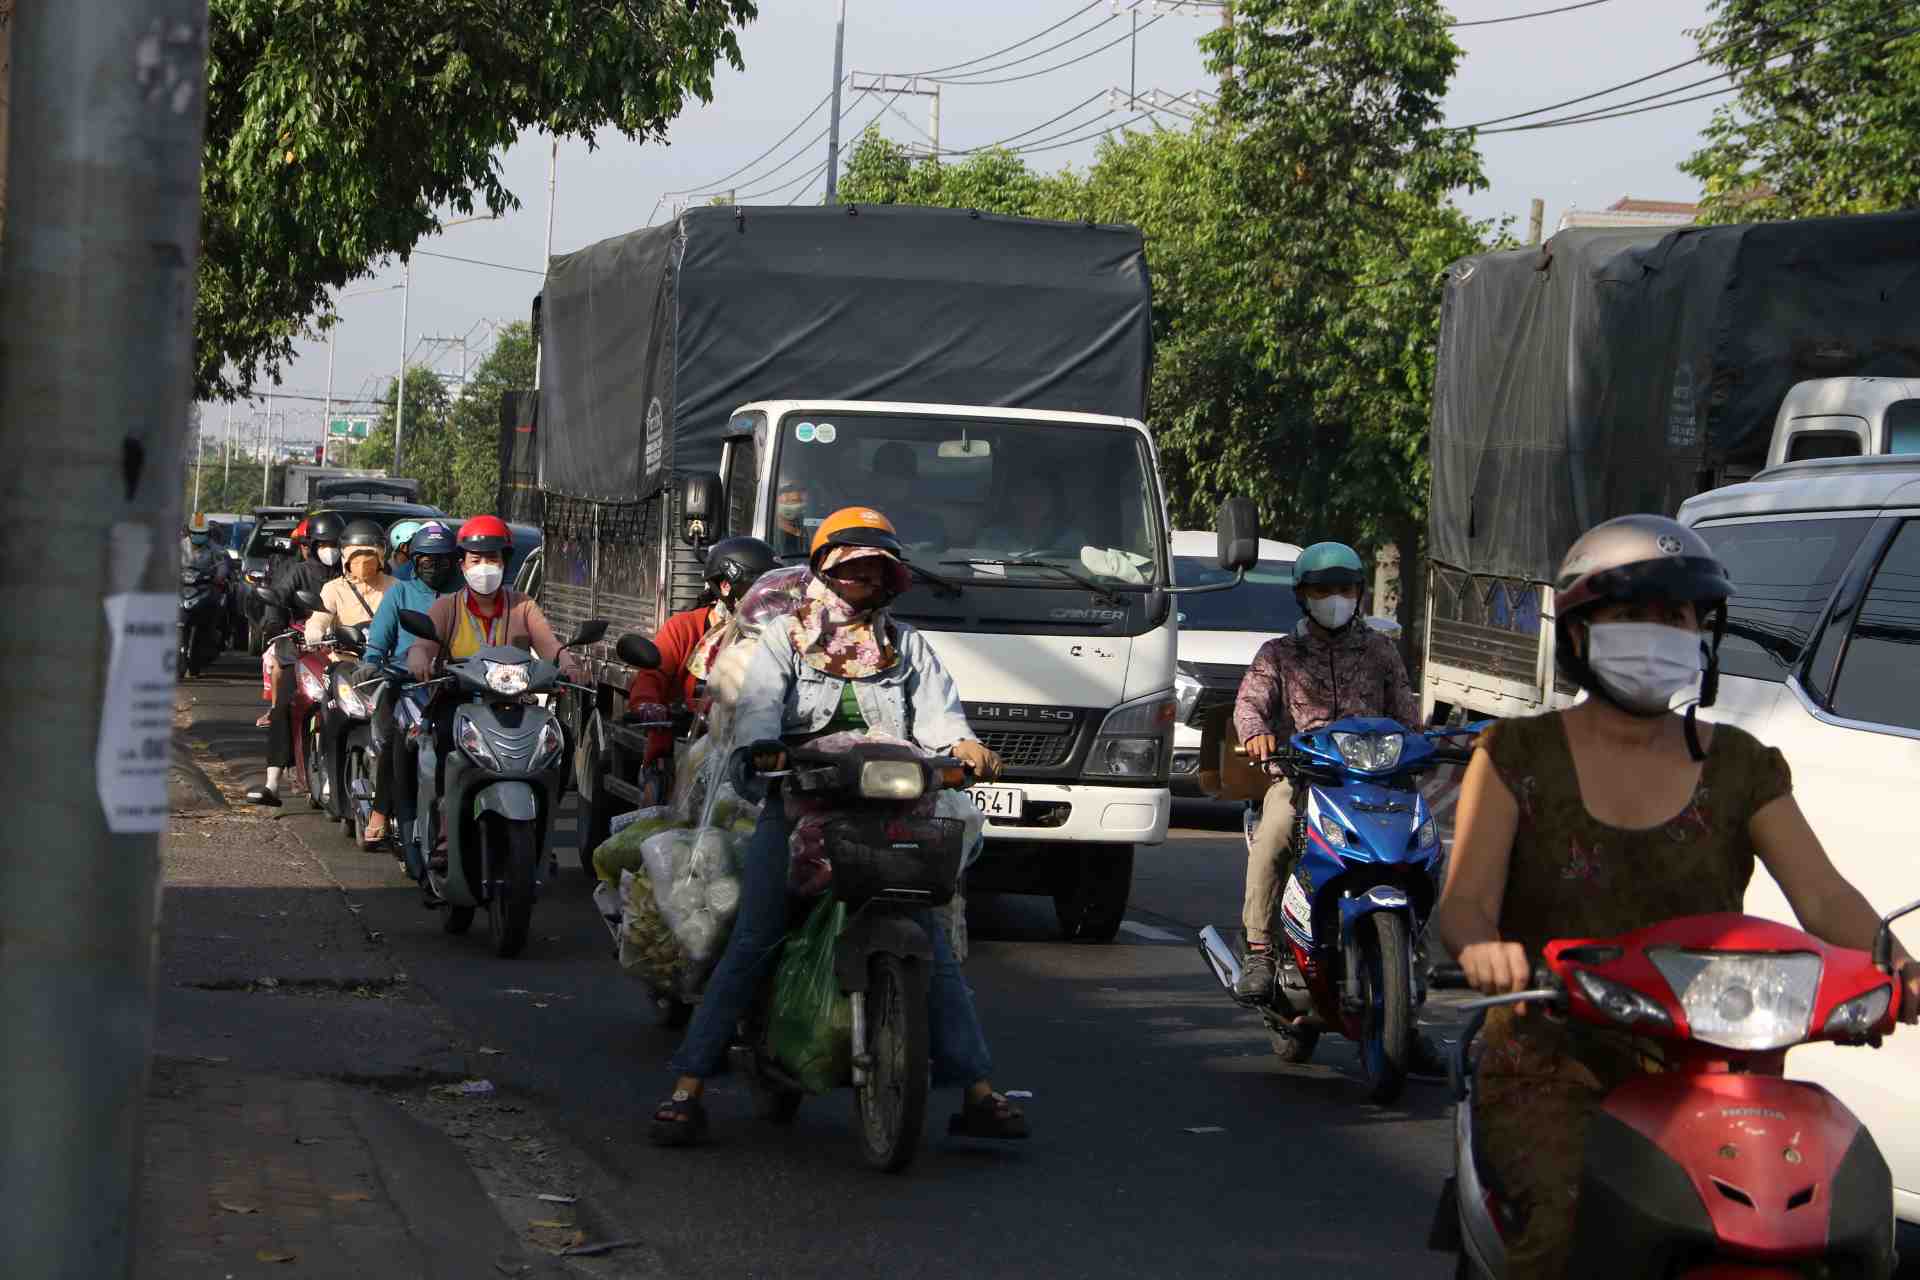 Đường nối với Bình Dương với Đồng Nai, đoạn qua thành phố Thủ Dầu Một, người dân quen gọi là đường Phú Lợi. Hiện đường 